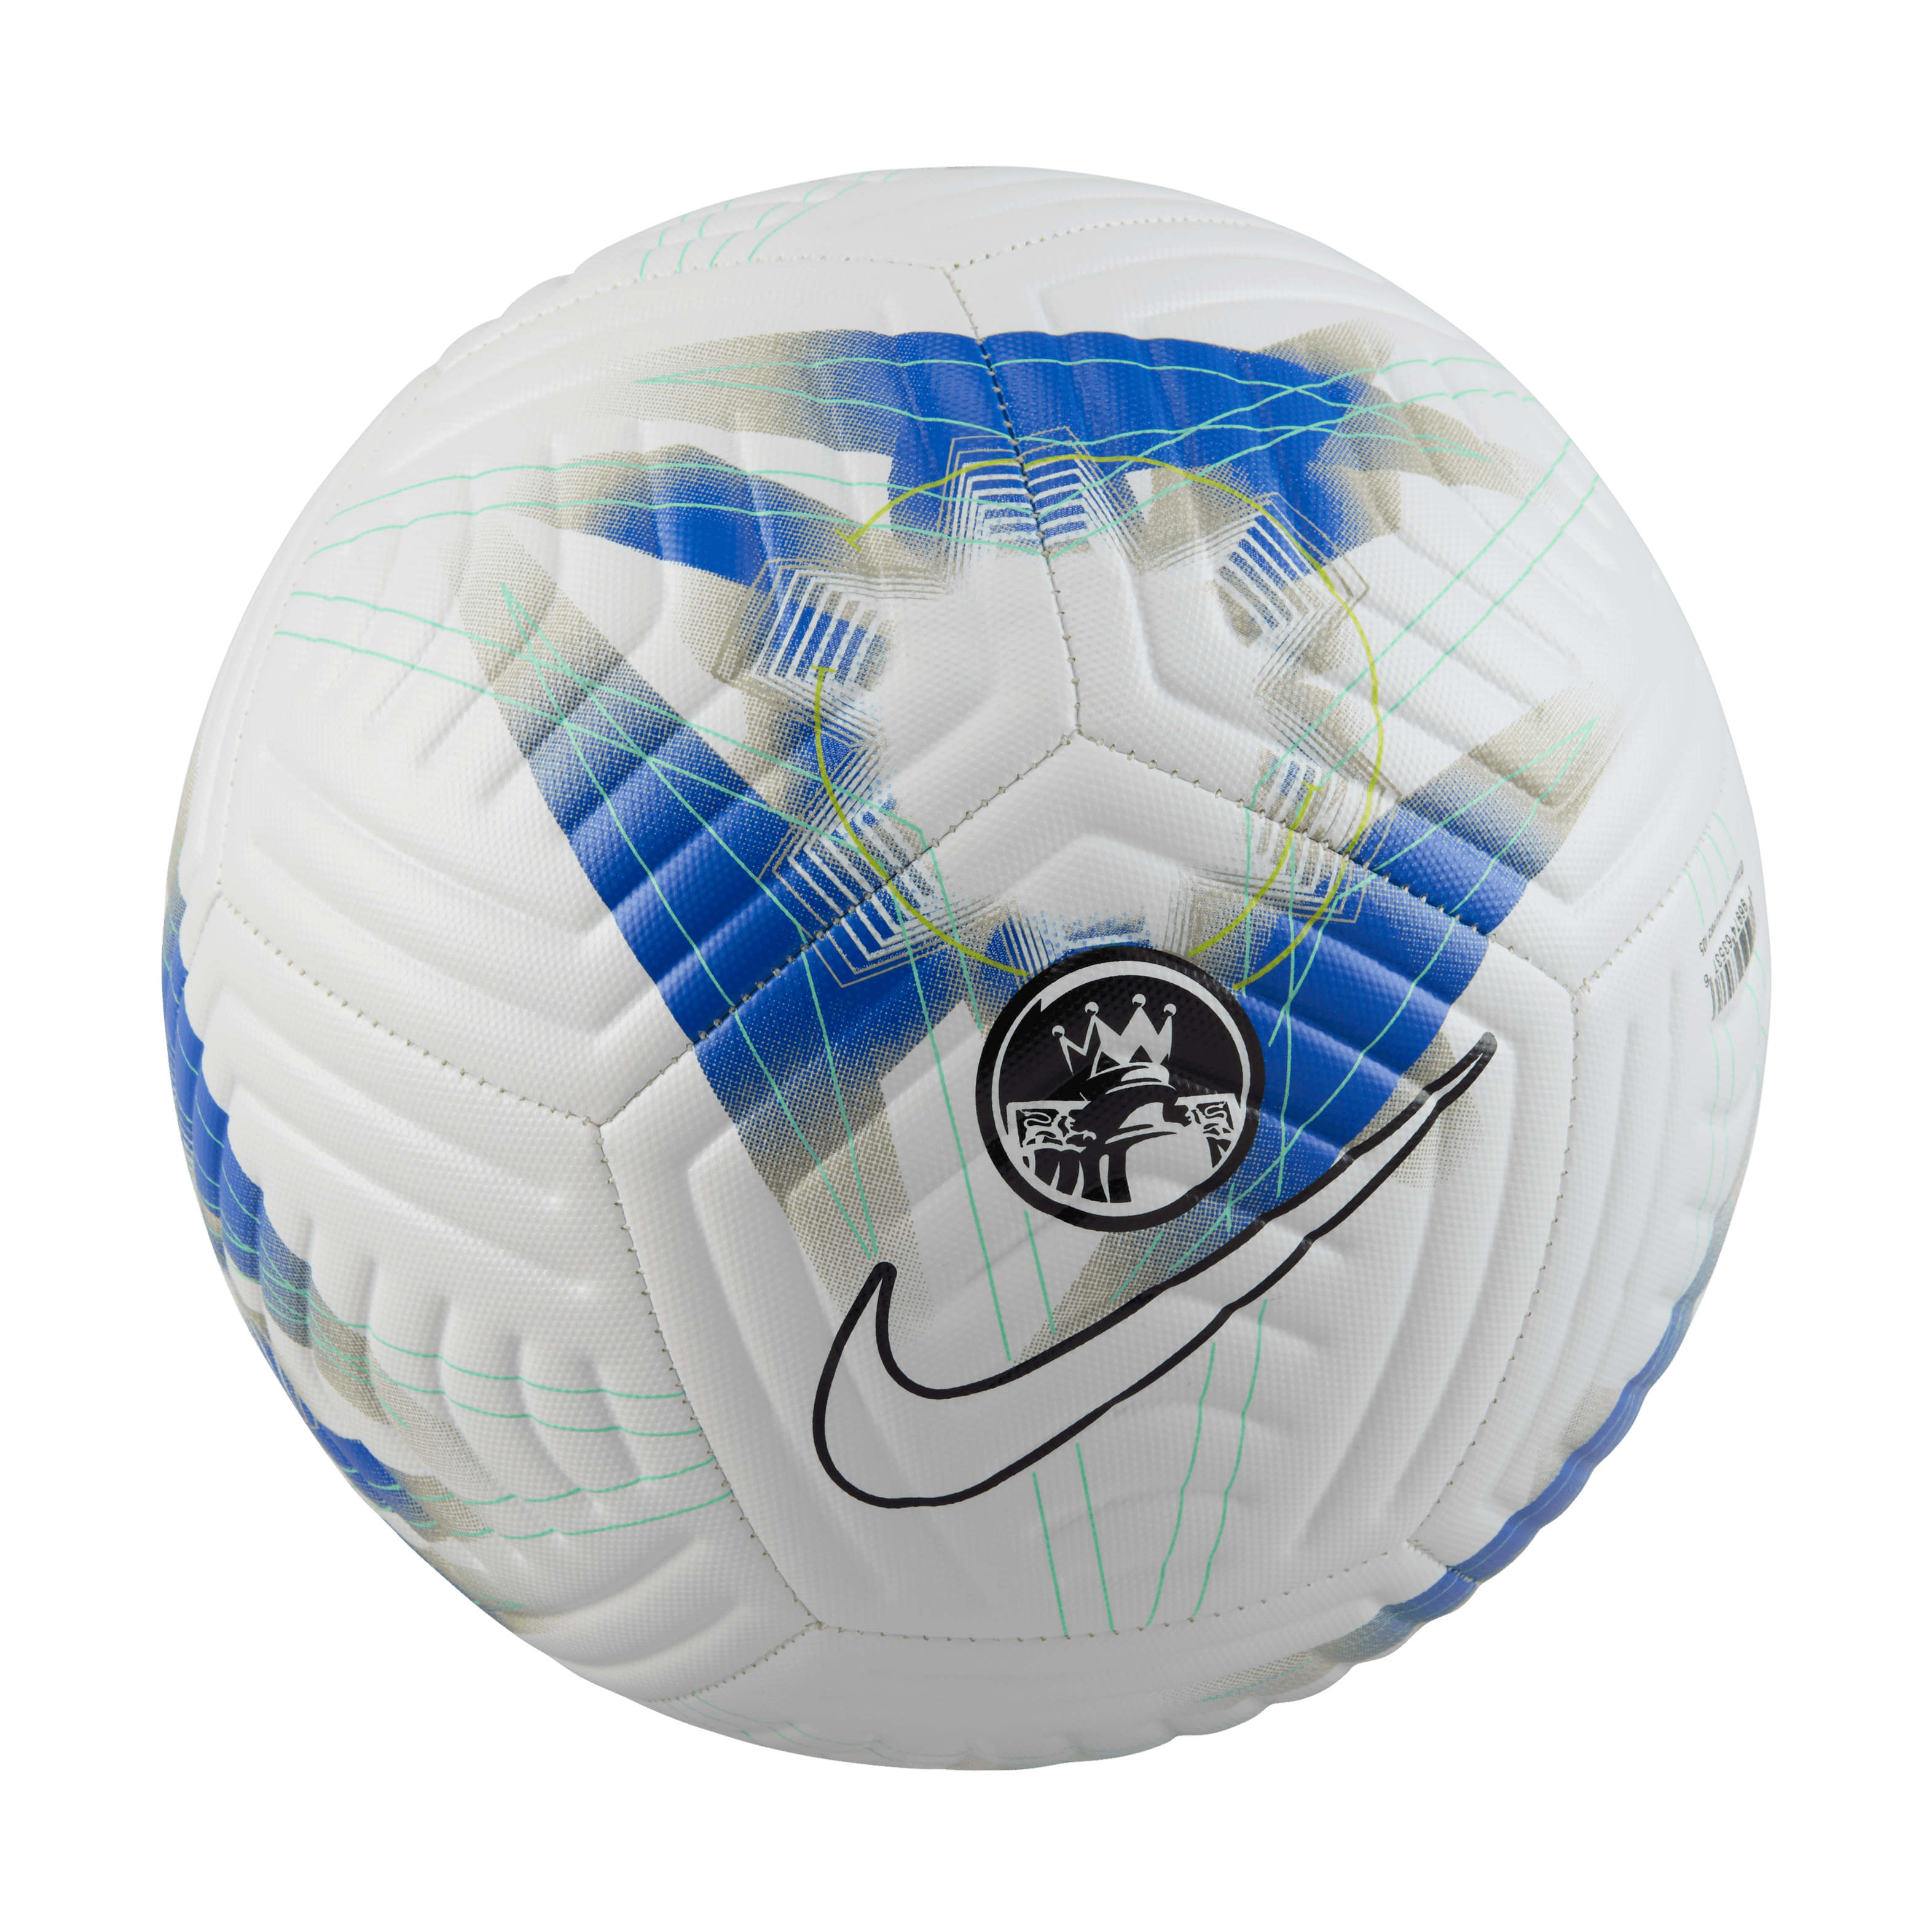 Nike Premier League Academy Soccer Ball